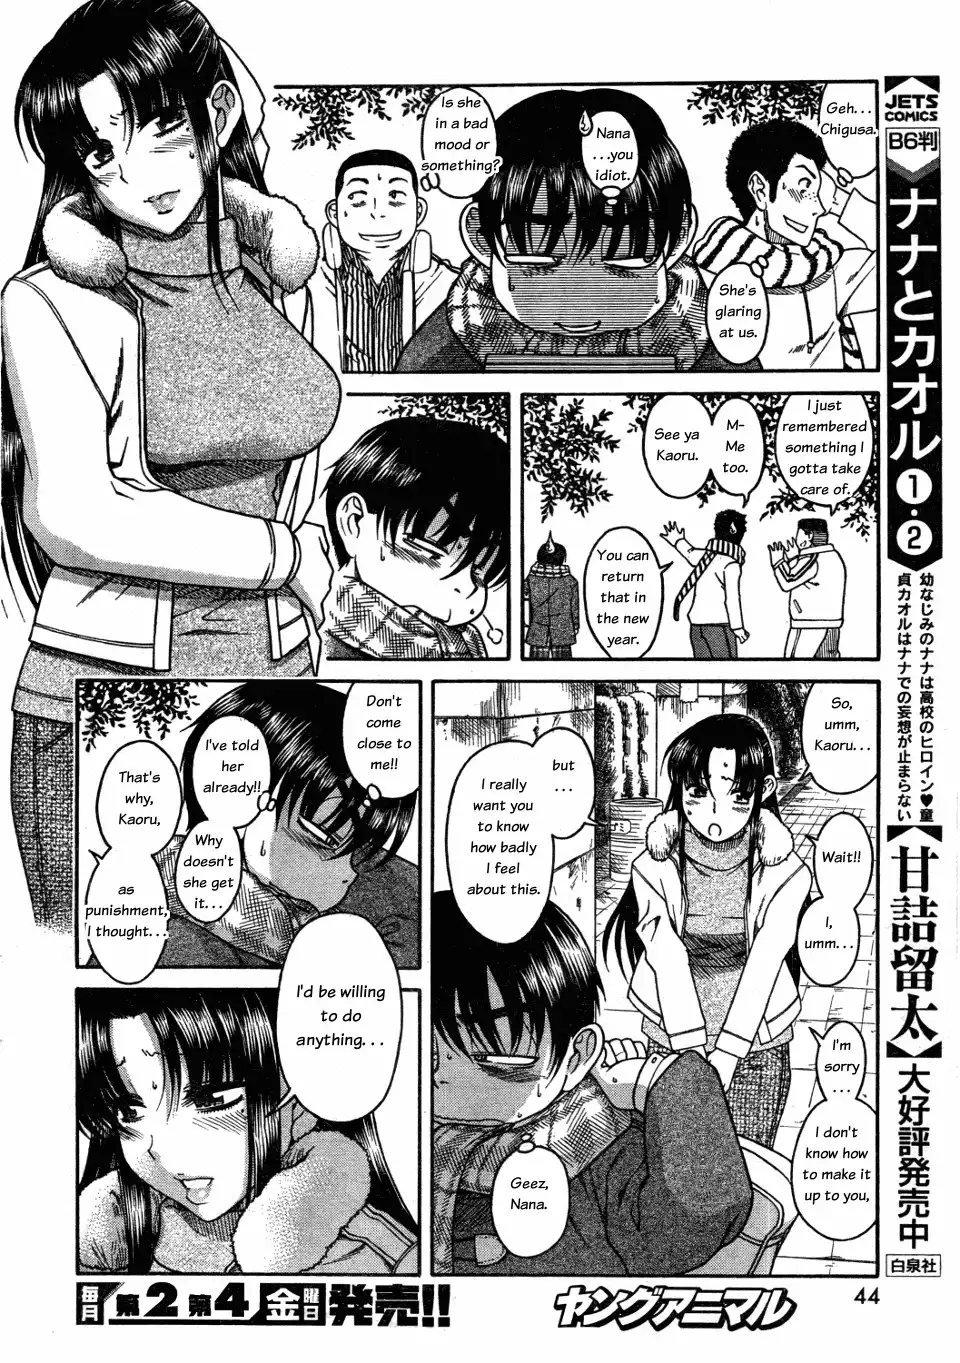 Nana to Kaoru - Chapter 26 Page 6